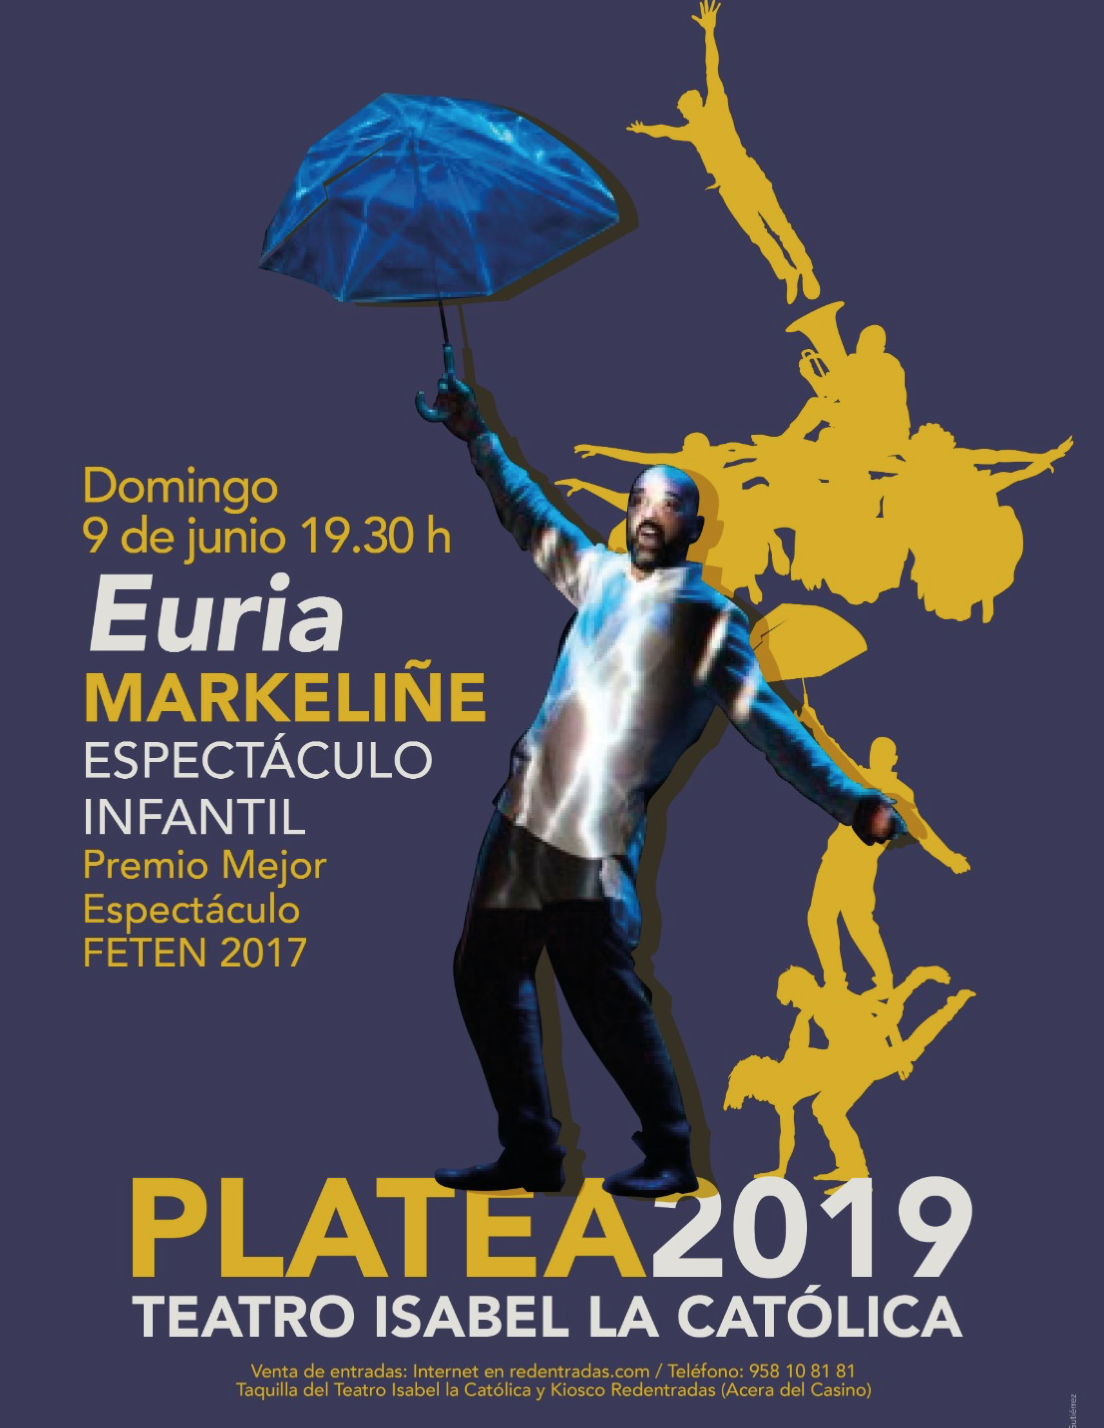 Euria (Lluvia) Platea 2019 en el Isabel la Católica